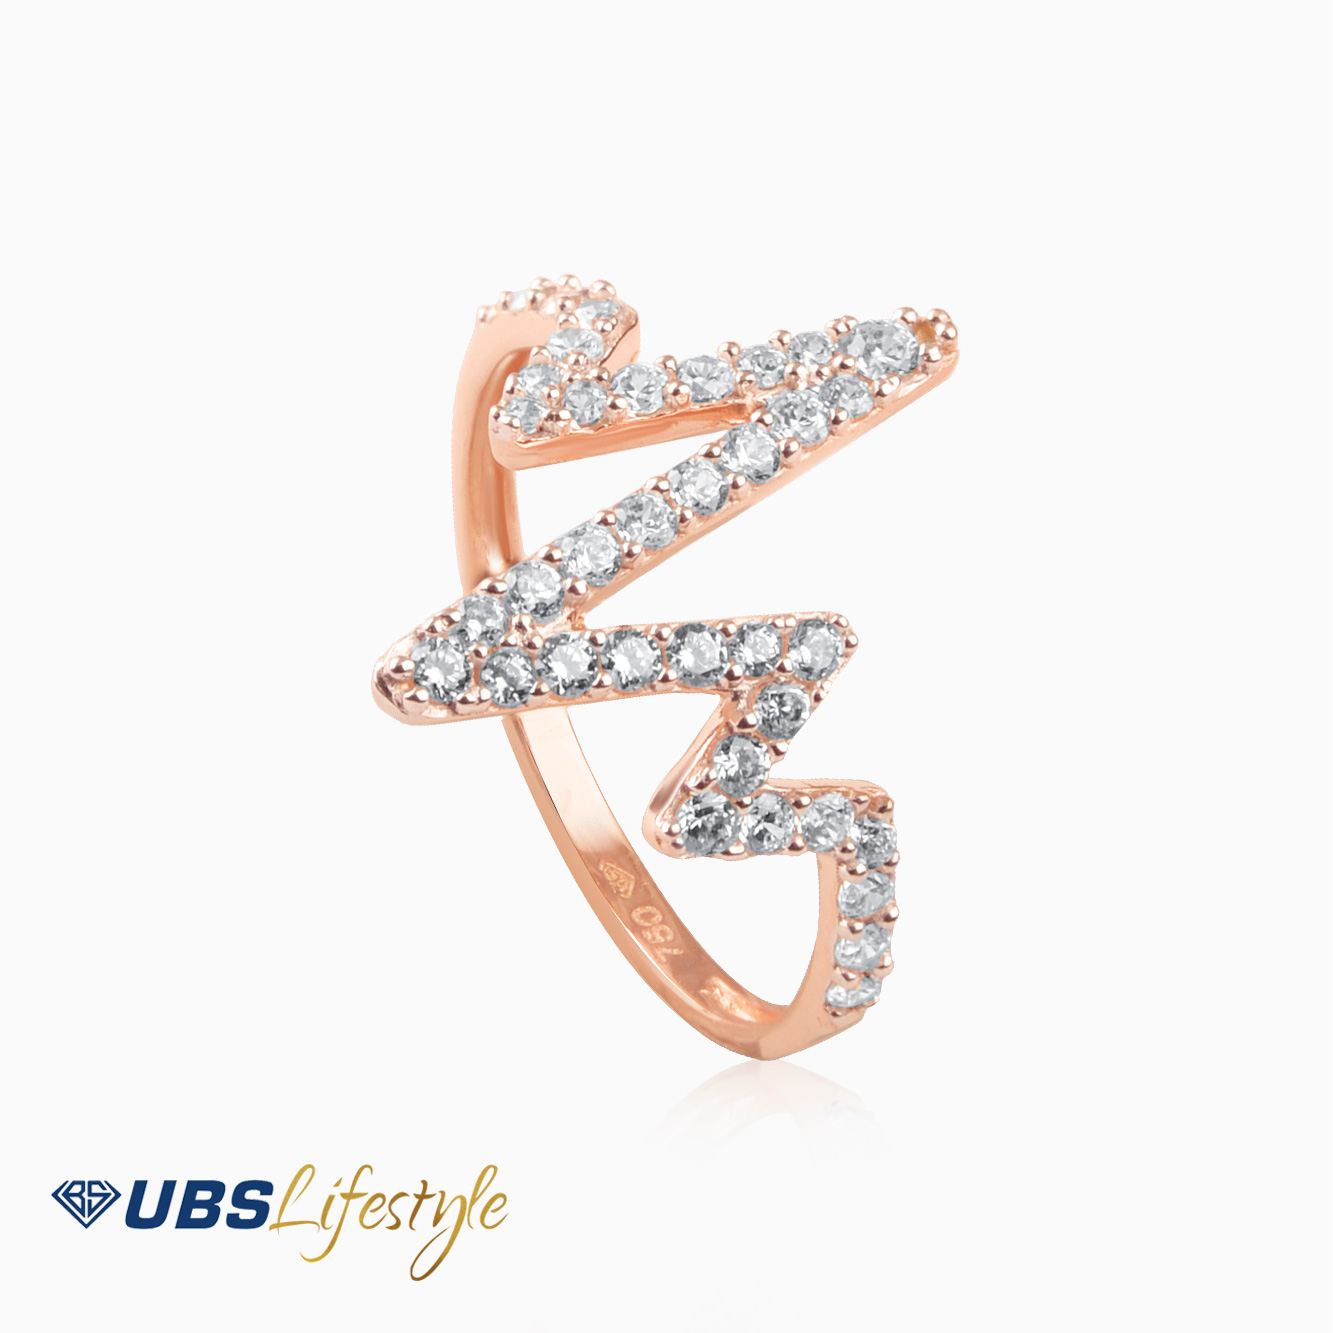 CINCIN EMAS UBS  UBSLifestyle Perhiasan  Emas Gold  Jewelry